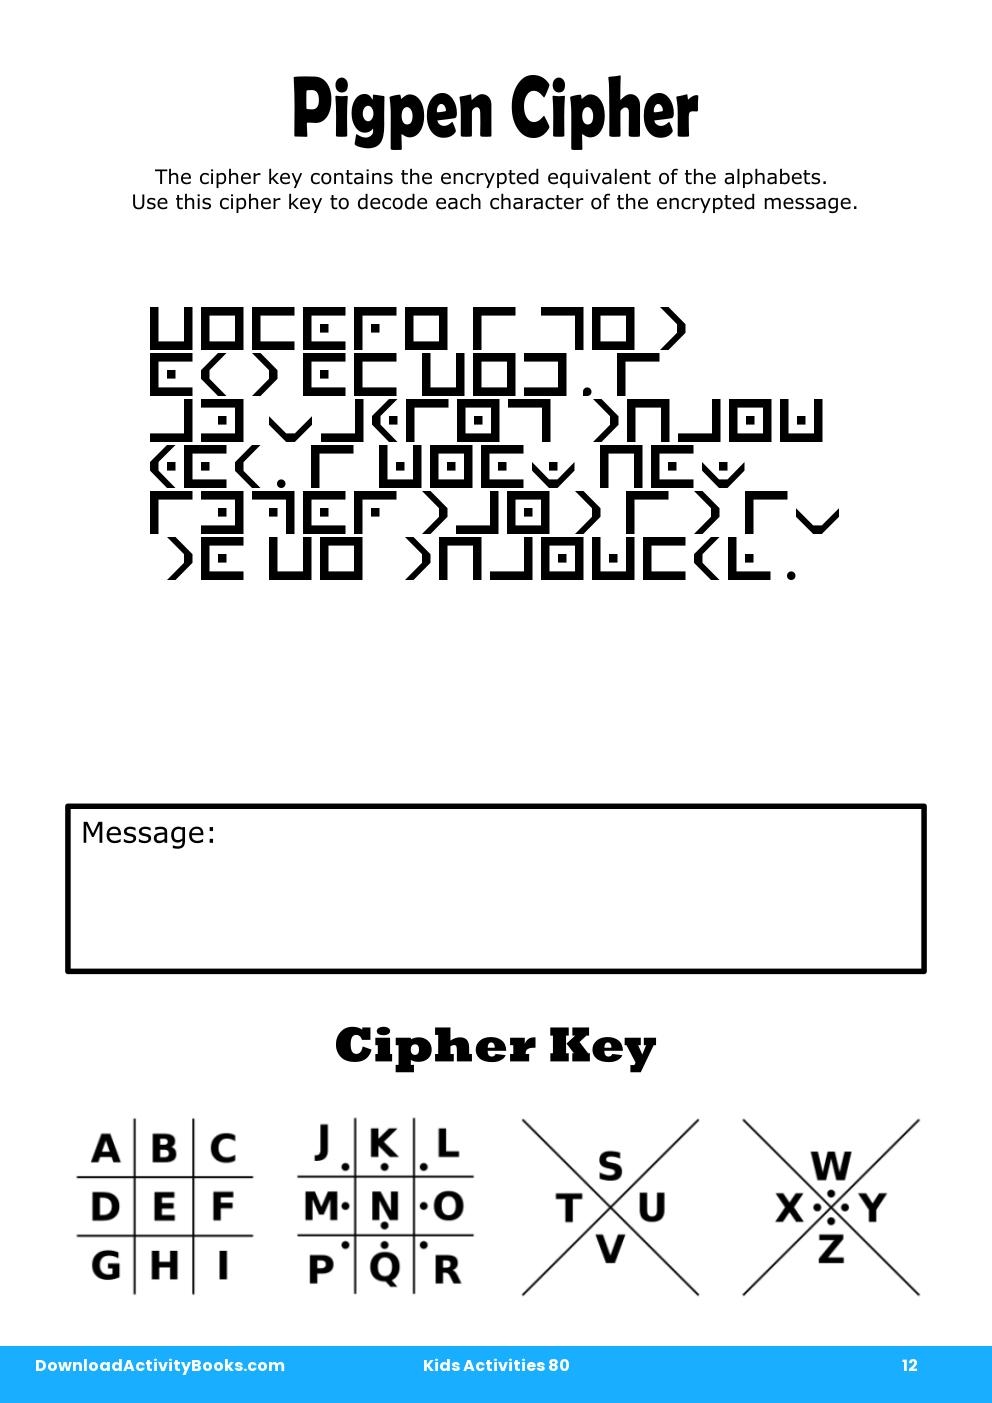 Pigpen Cipher in Kids Activities 80